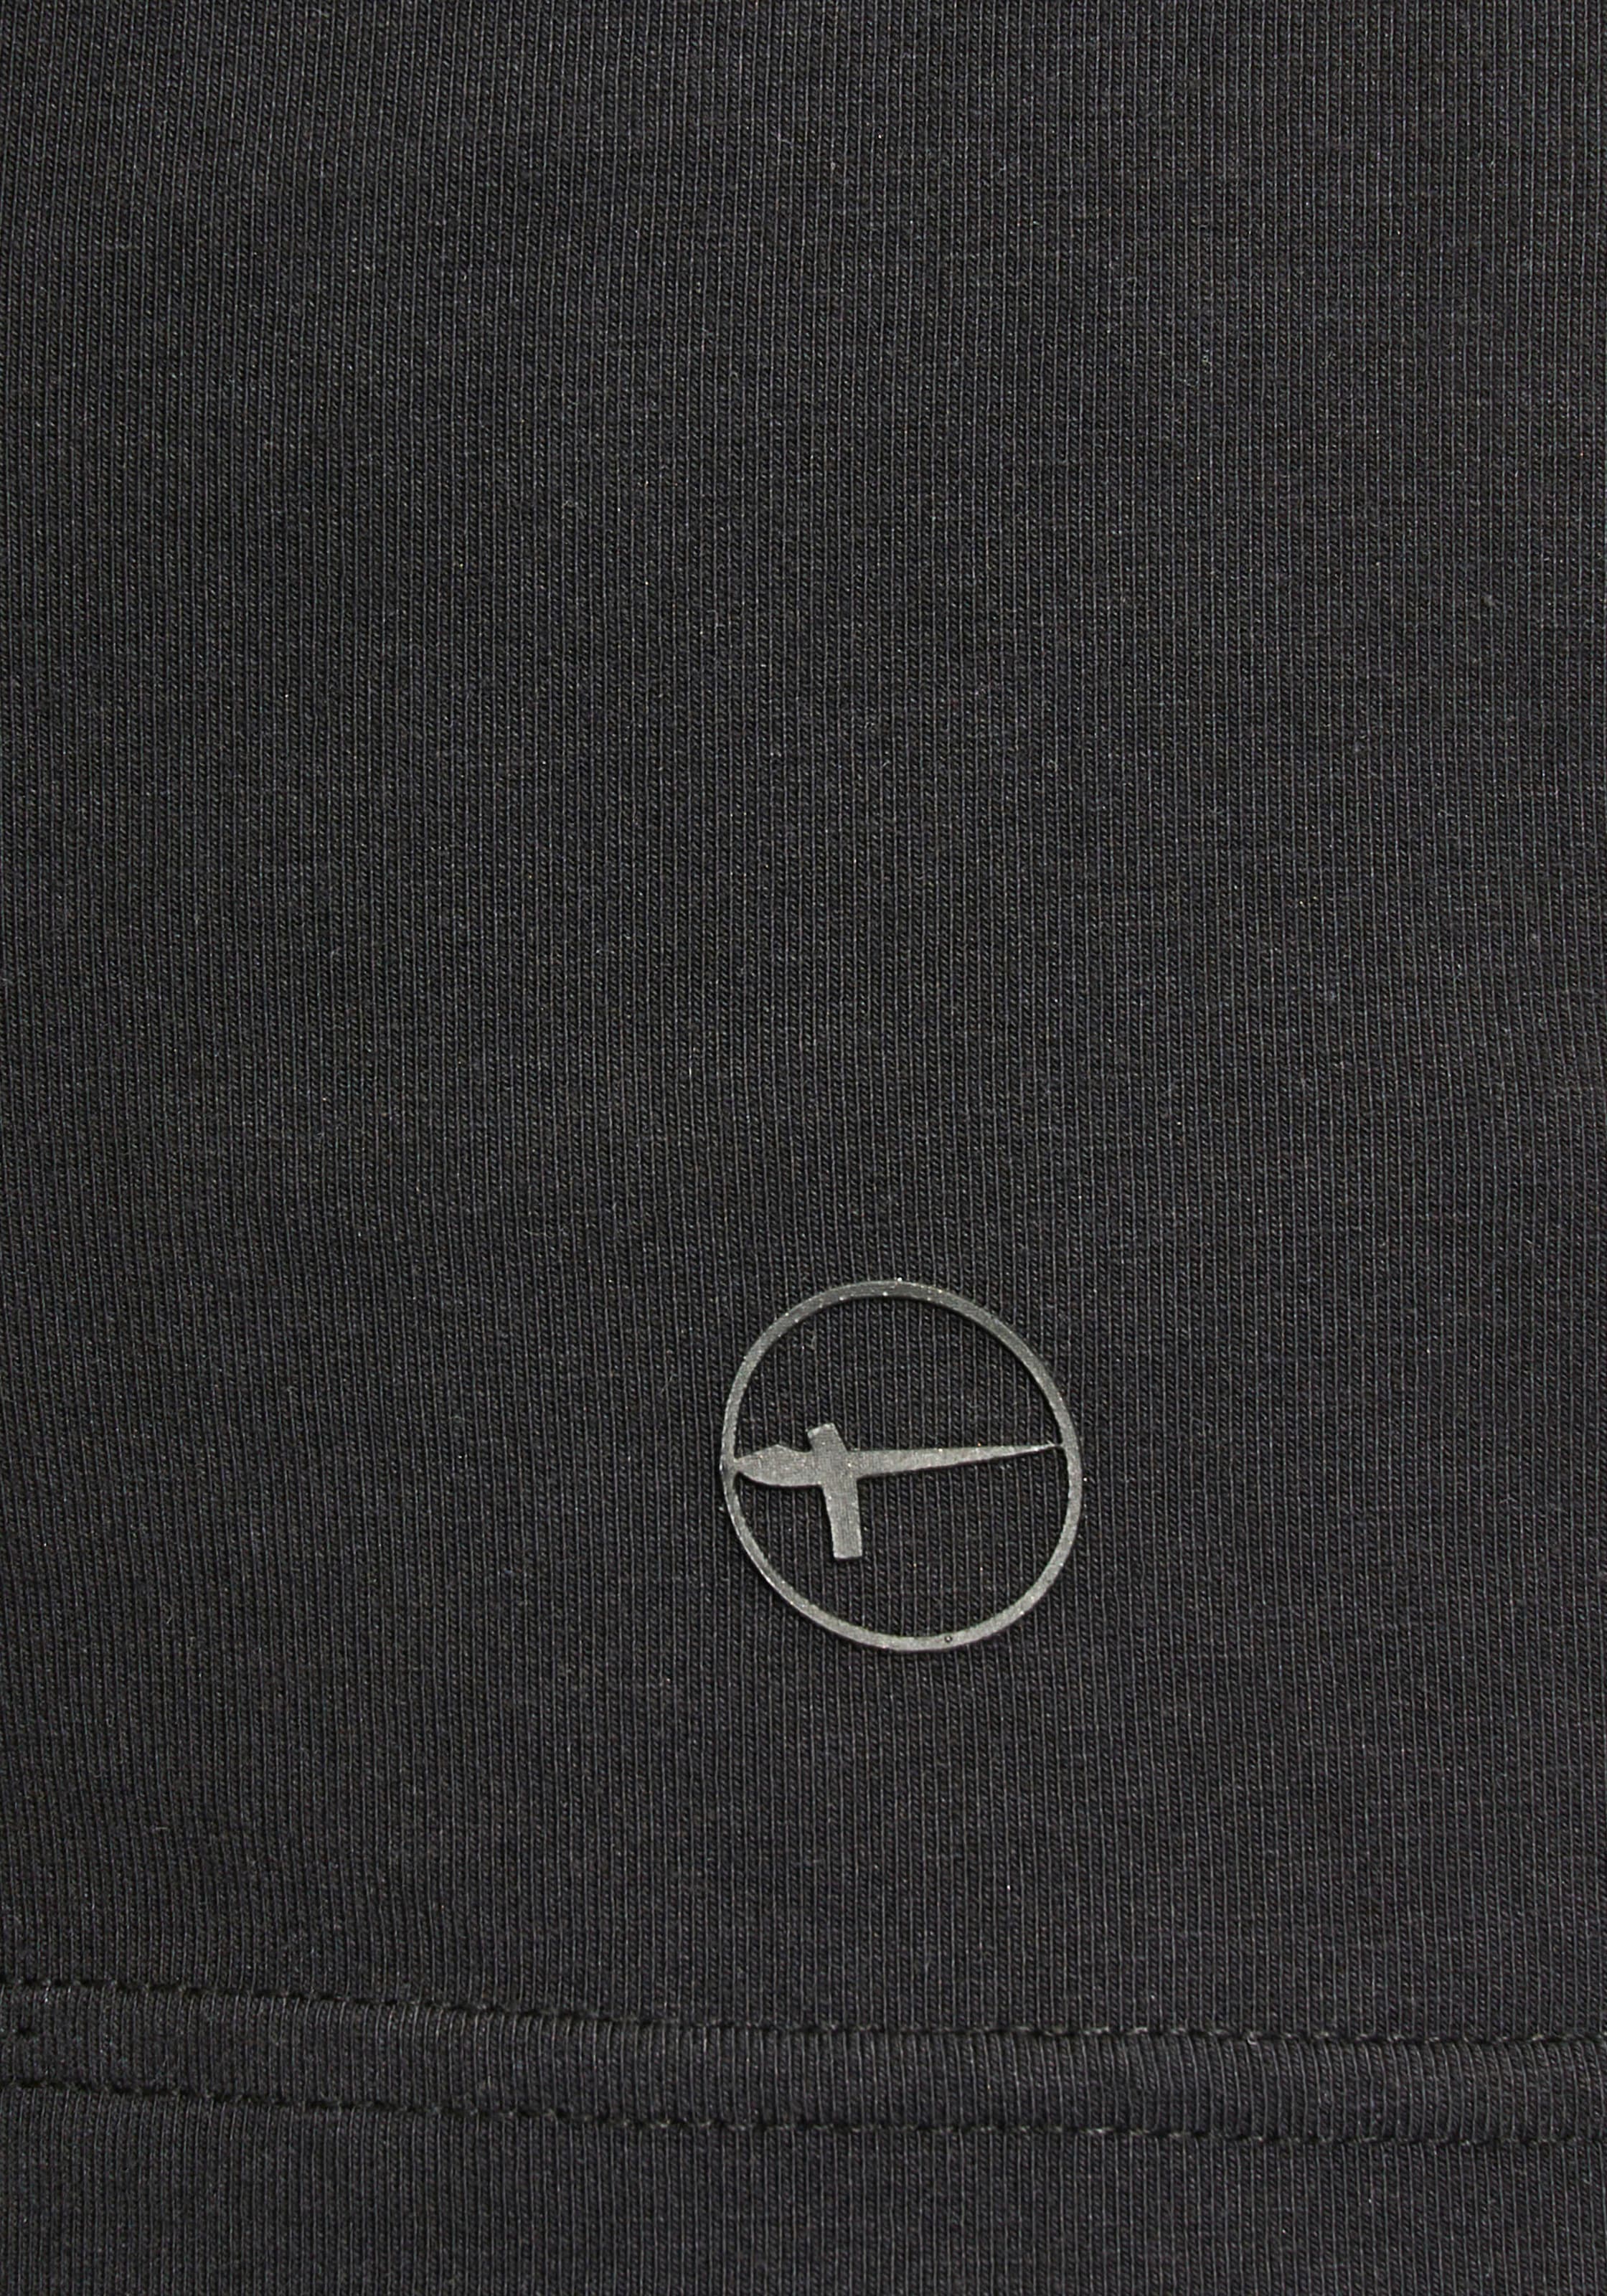 Tamaris T-Shirt, mit Rundhalsausschnitt - NEUE KOLLEKTION